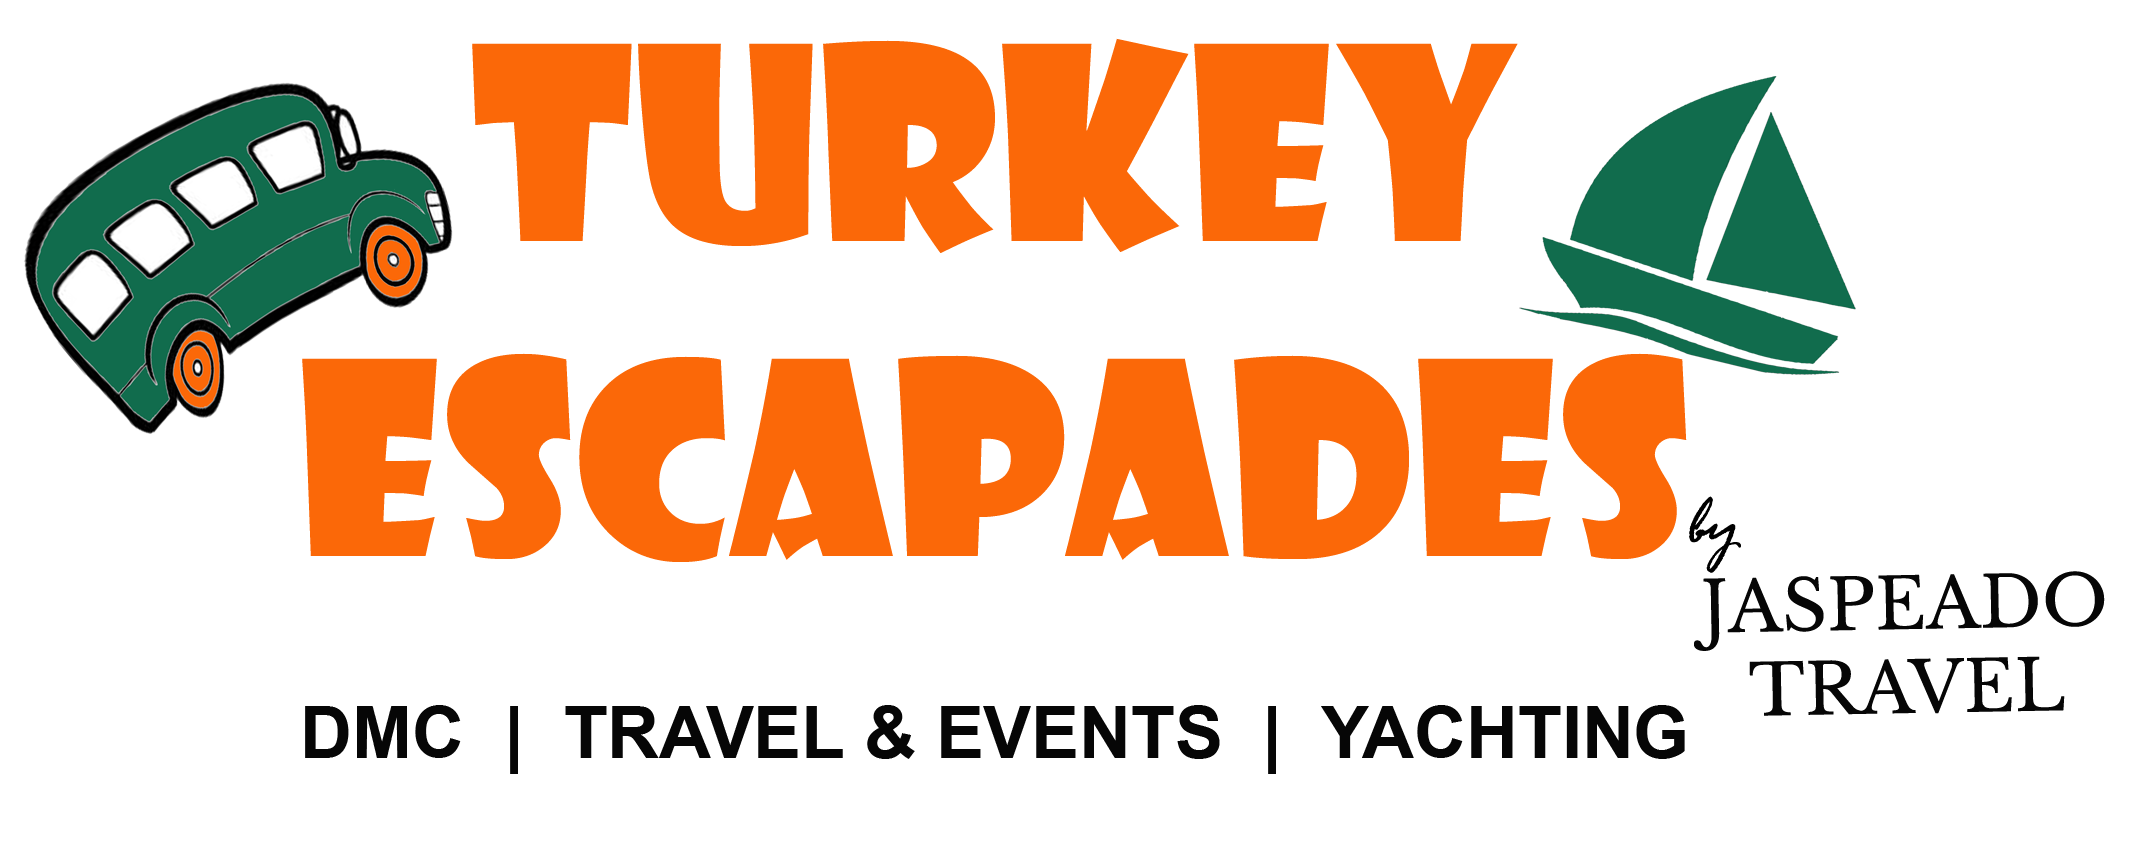 Turkey Escapades | Ertugrul Islamic Turkey Tour - 6 Days Private Group Tour - Turkey Escapades